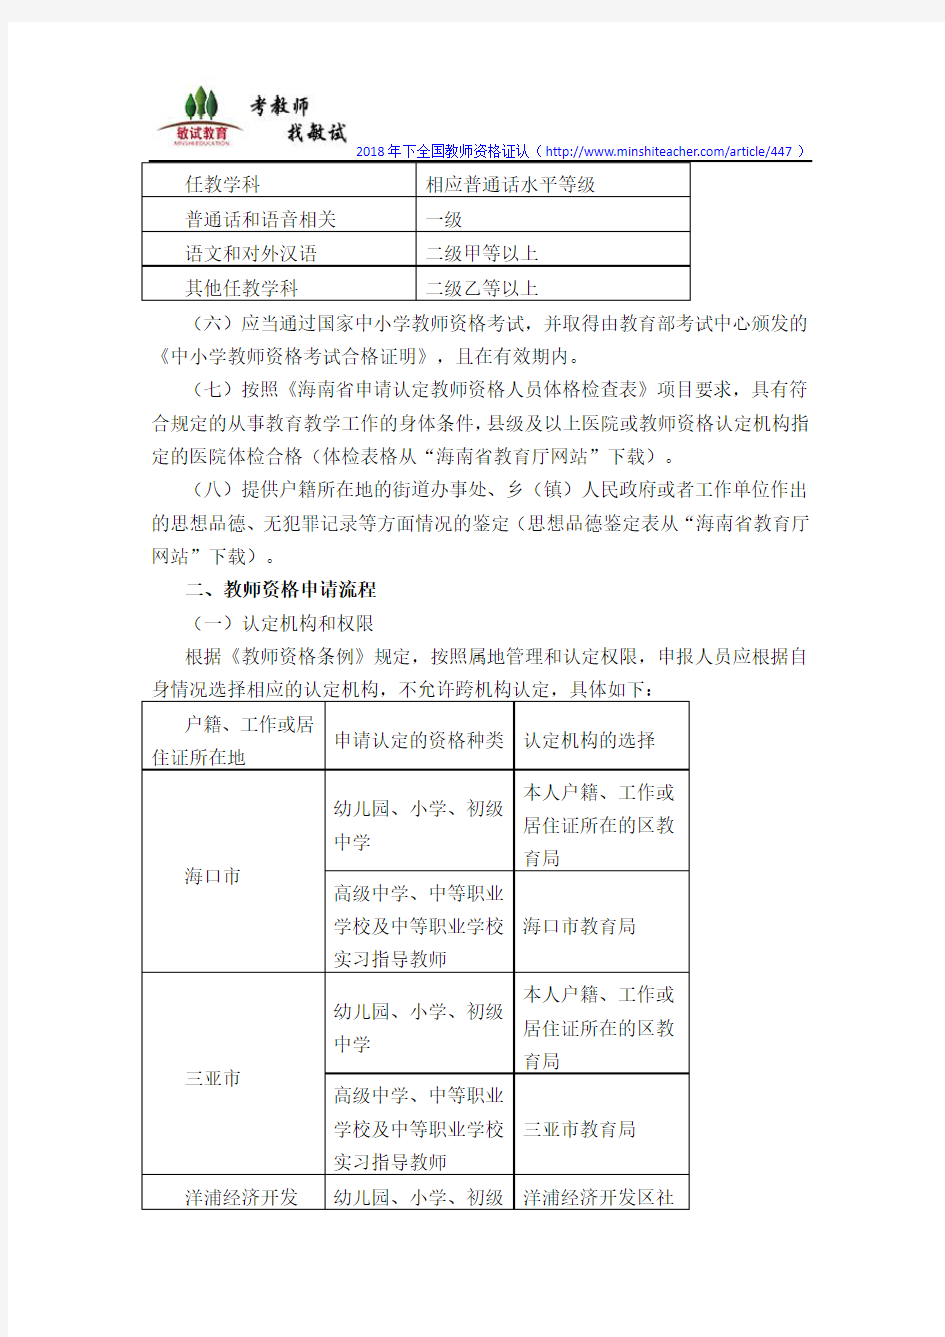 2018年海南省中小学教师资格认定通知